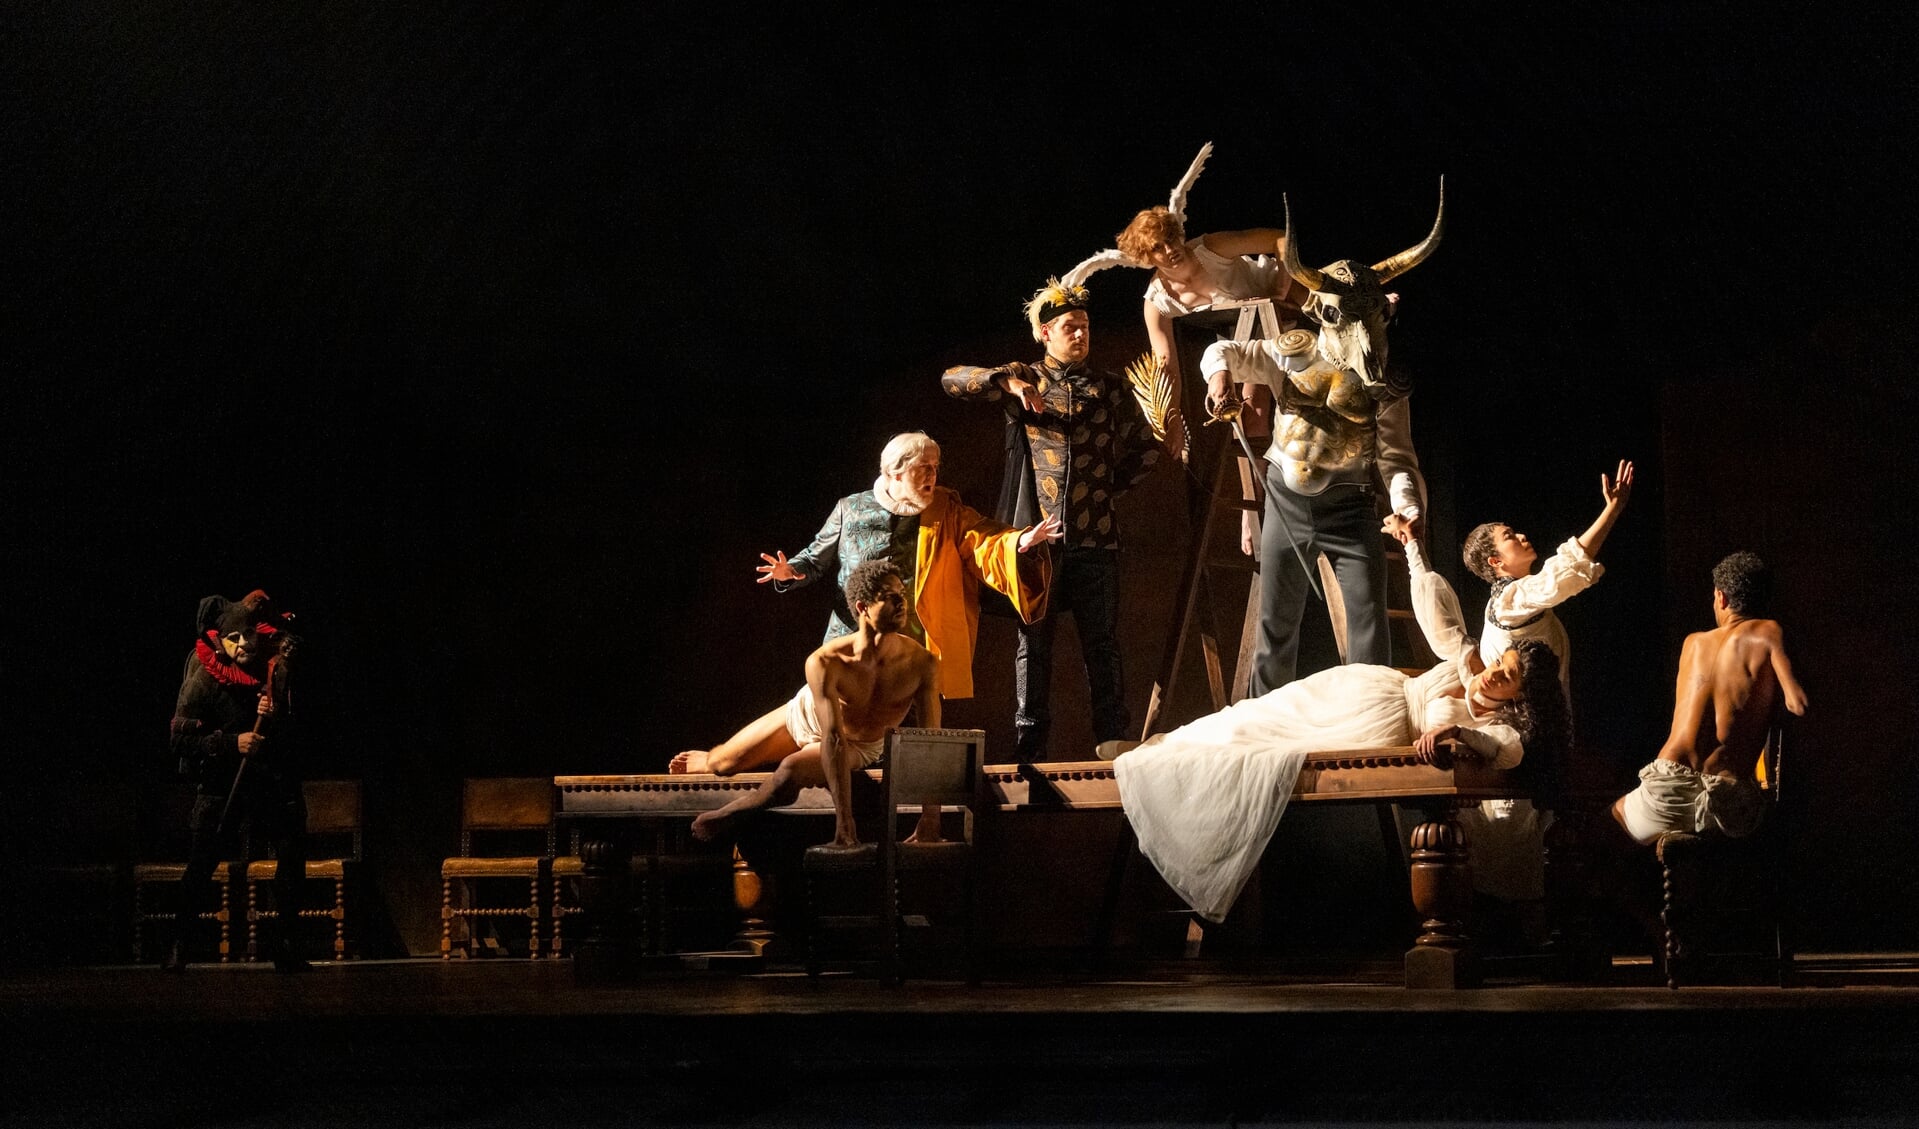 Het Royal Opera House in London vormt het decor voor een jubileumuitvoering van Verdi's Rigoletto.